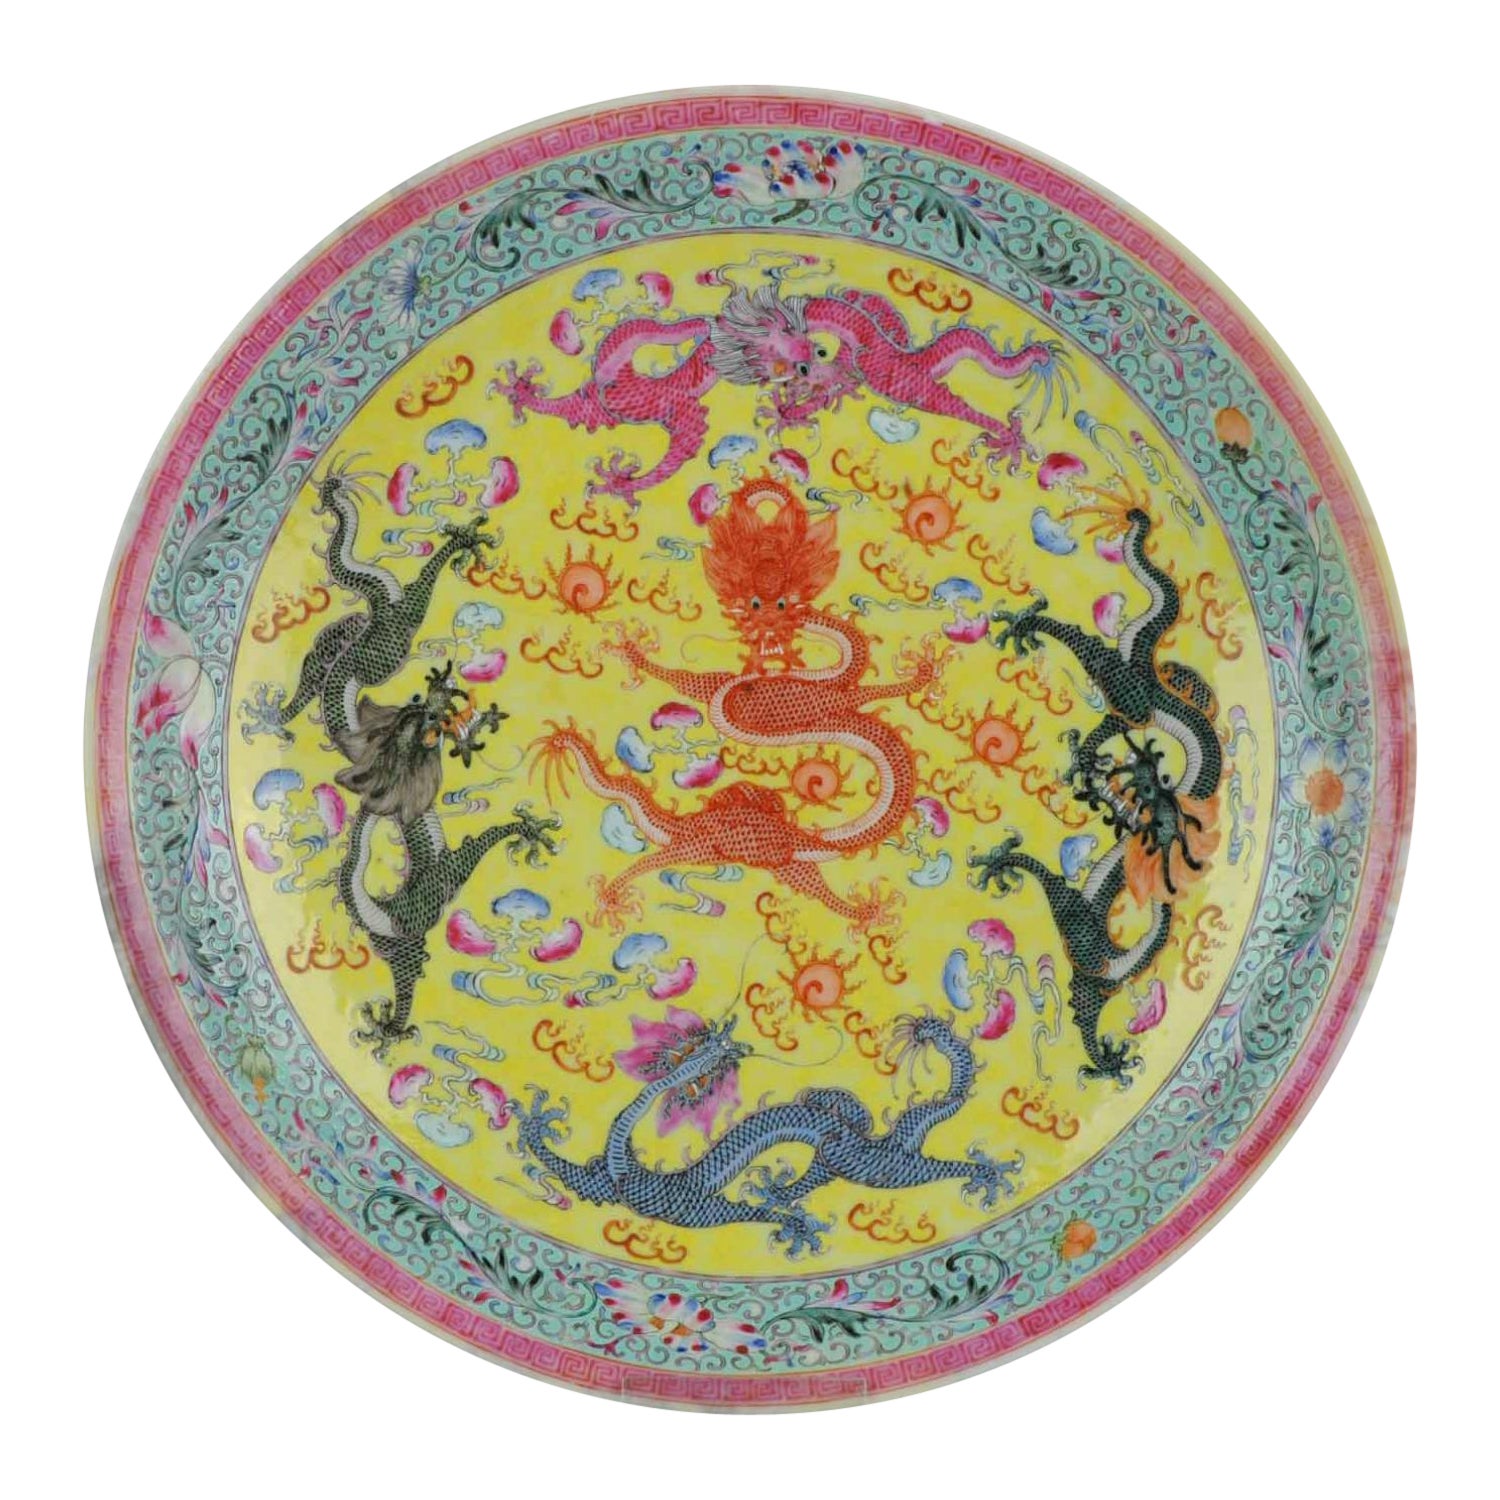 Chinesisches Porzellan PROC Plate Drachen markierter Sockel, 1950-1960